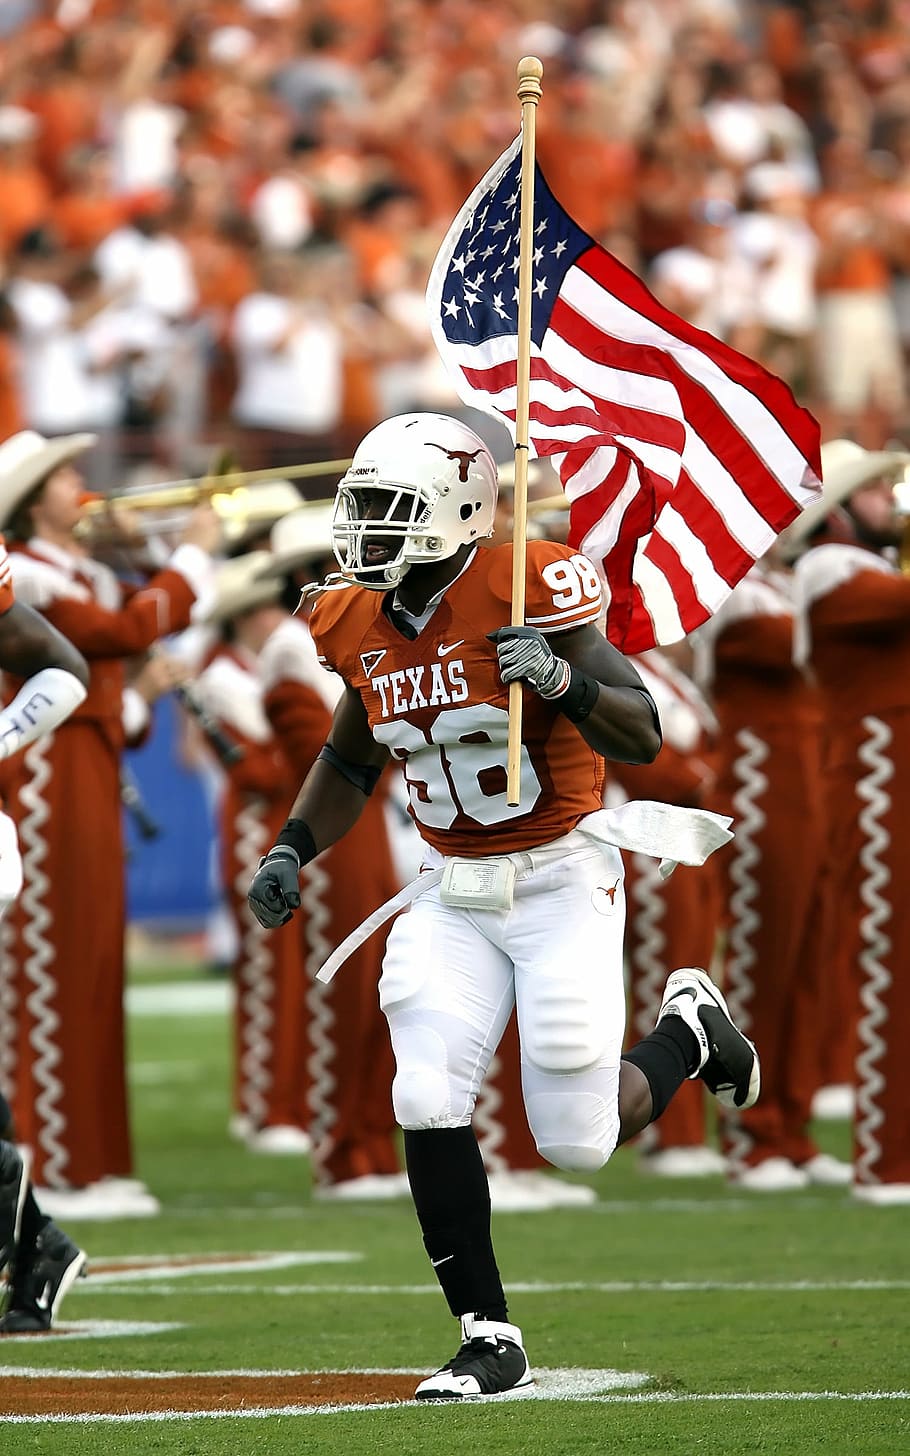 jugador de fútbol, ​​celebración, bandera de EE. UU., corriendo, fútbol americano, bandera, bandera americana, barras y estrellas, fútbol de texas, fútbol universitario